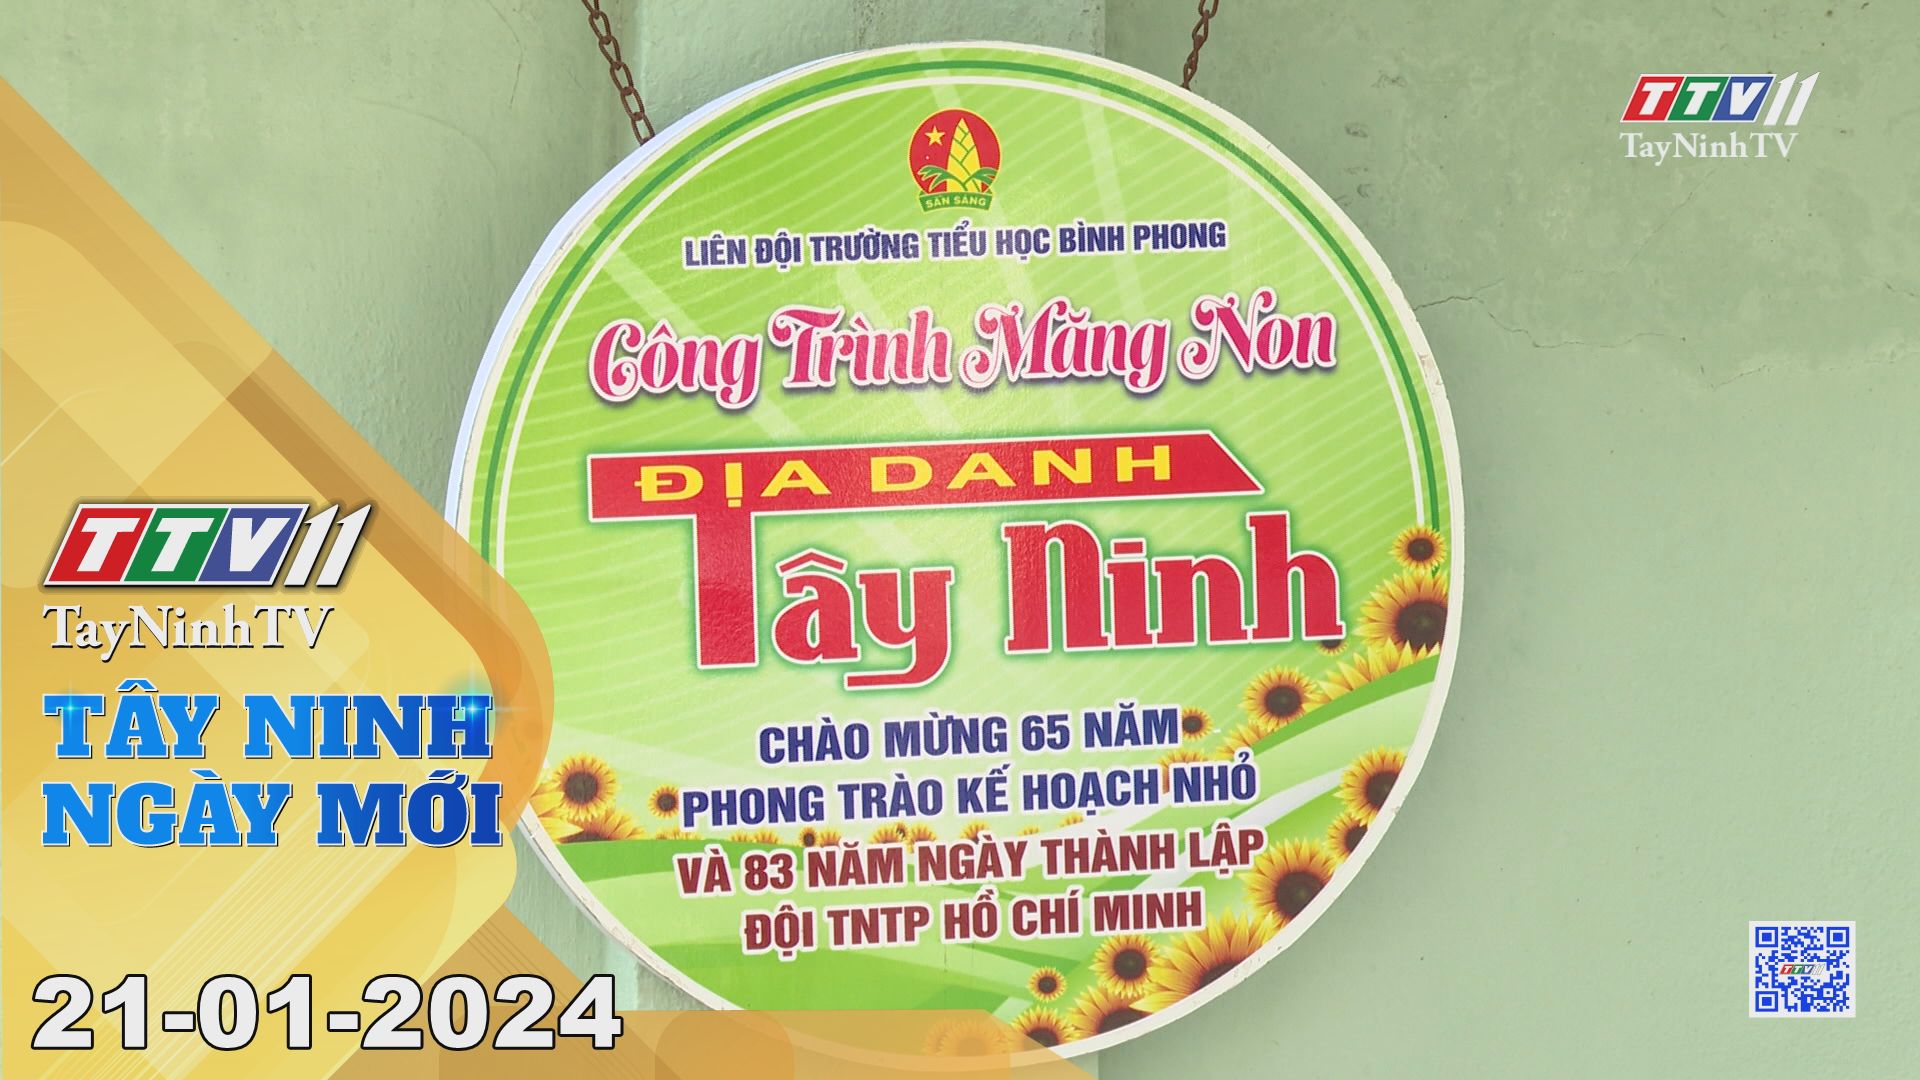 Tây Ninh ngày mới 21-01-2024 | Tin tức hôm nay | TayNinhTV